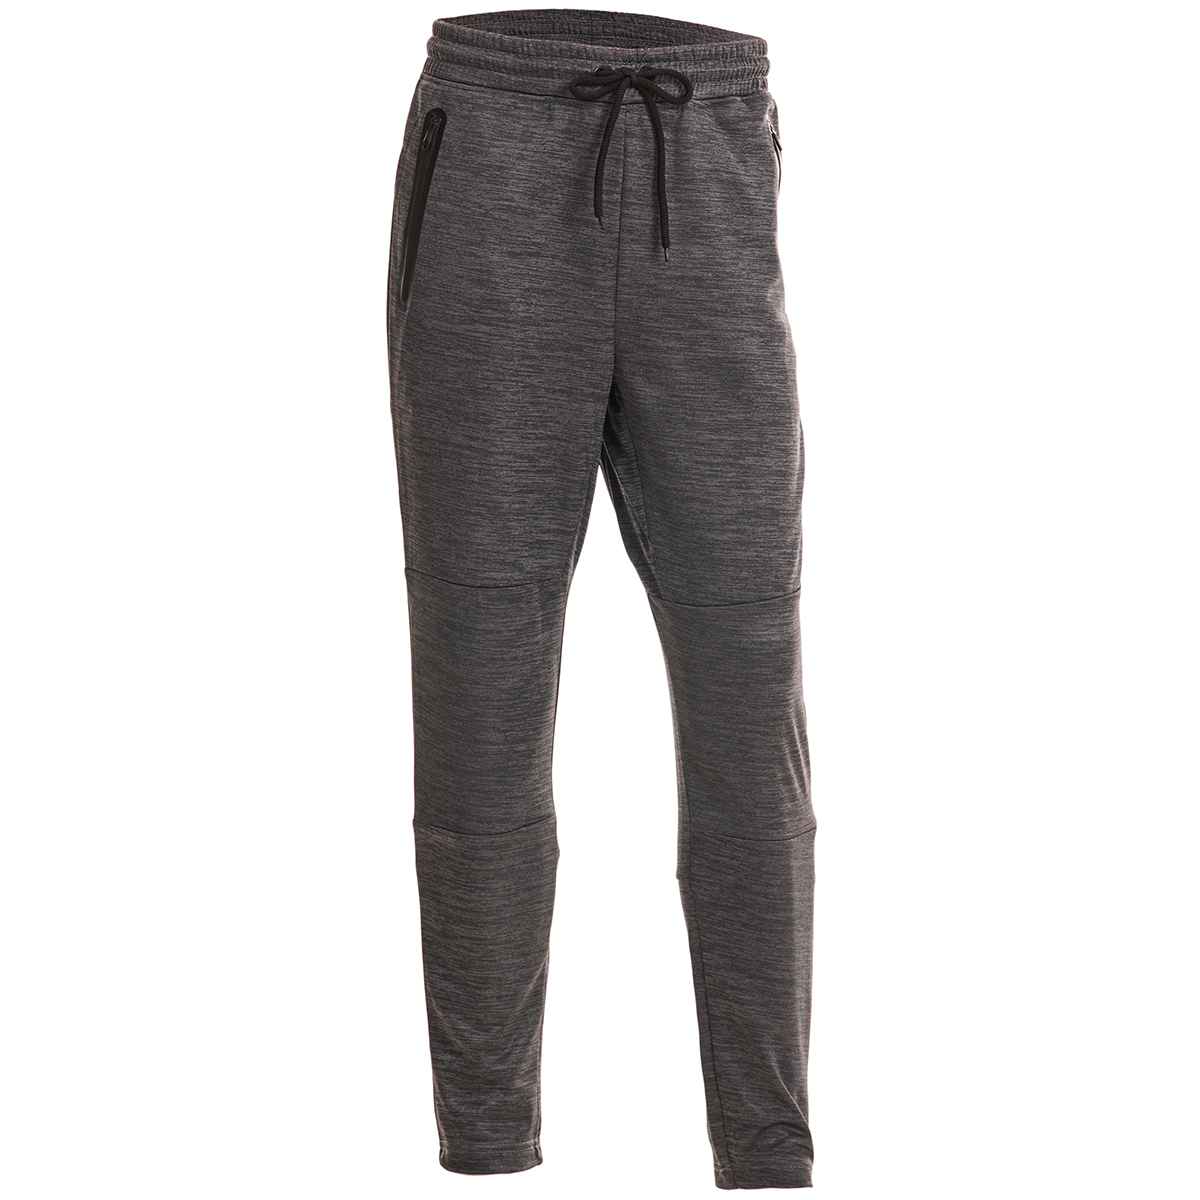 Spyder Men's Tech Fleece Pants W/ Zip Pockets